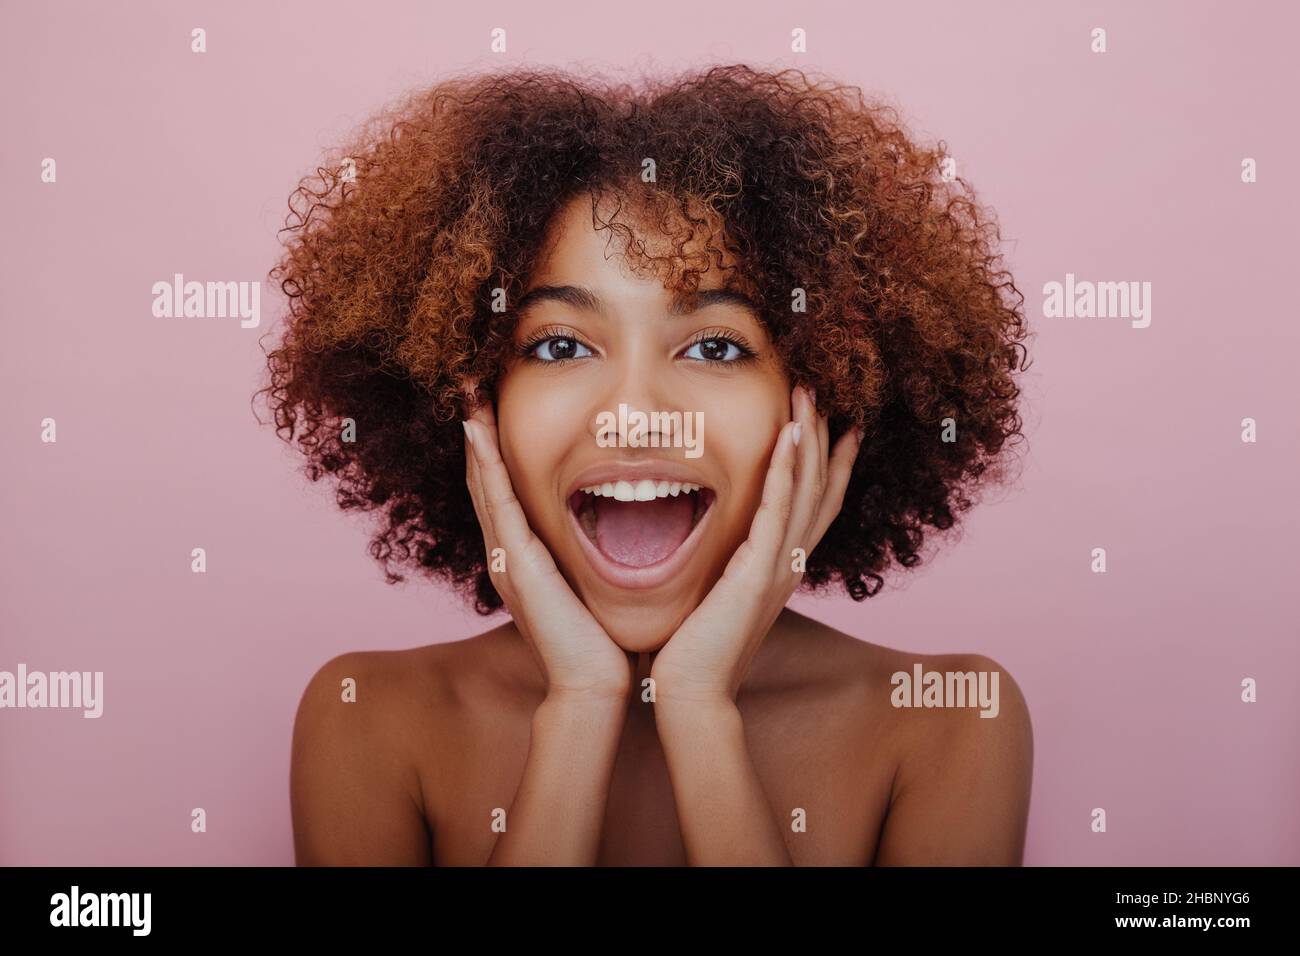 Retrato de una joven mujer de piel oscura agradablemente sorprendida con un cabello rizado exuberante mirando hacia la cámara con la boca abierta y su cara en sus manos sobre un fondo rosa sonriendo Foto de stock